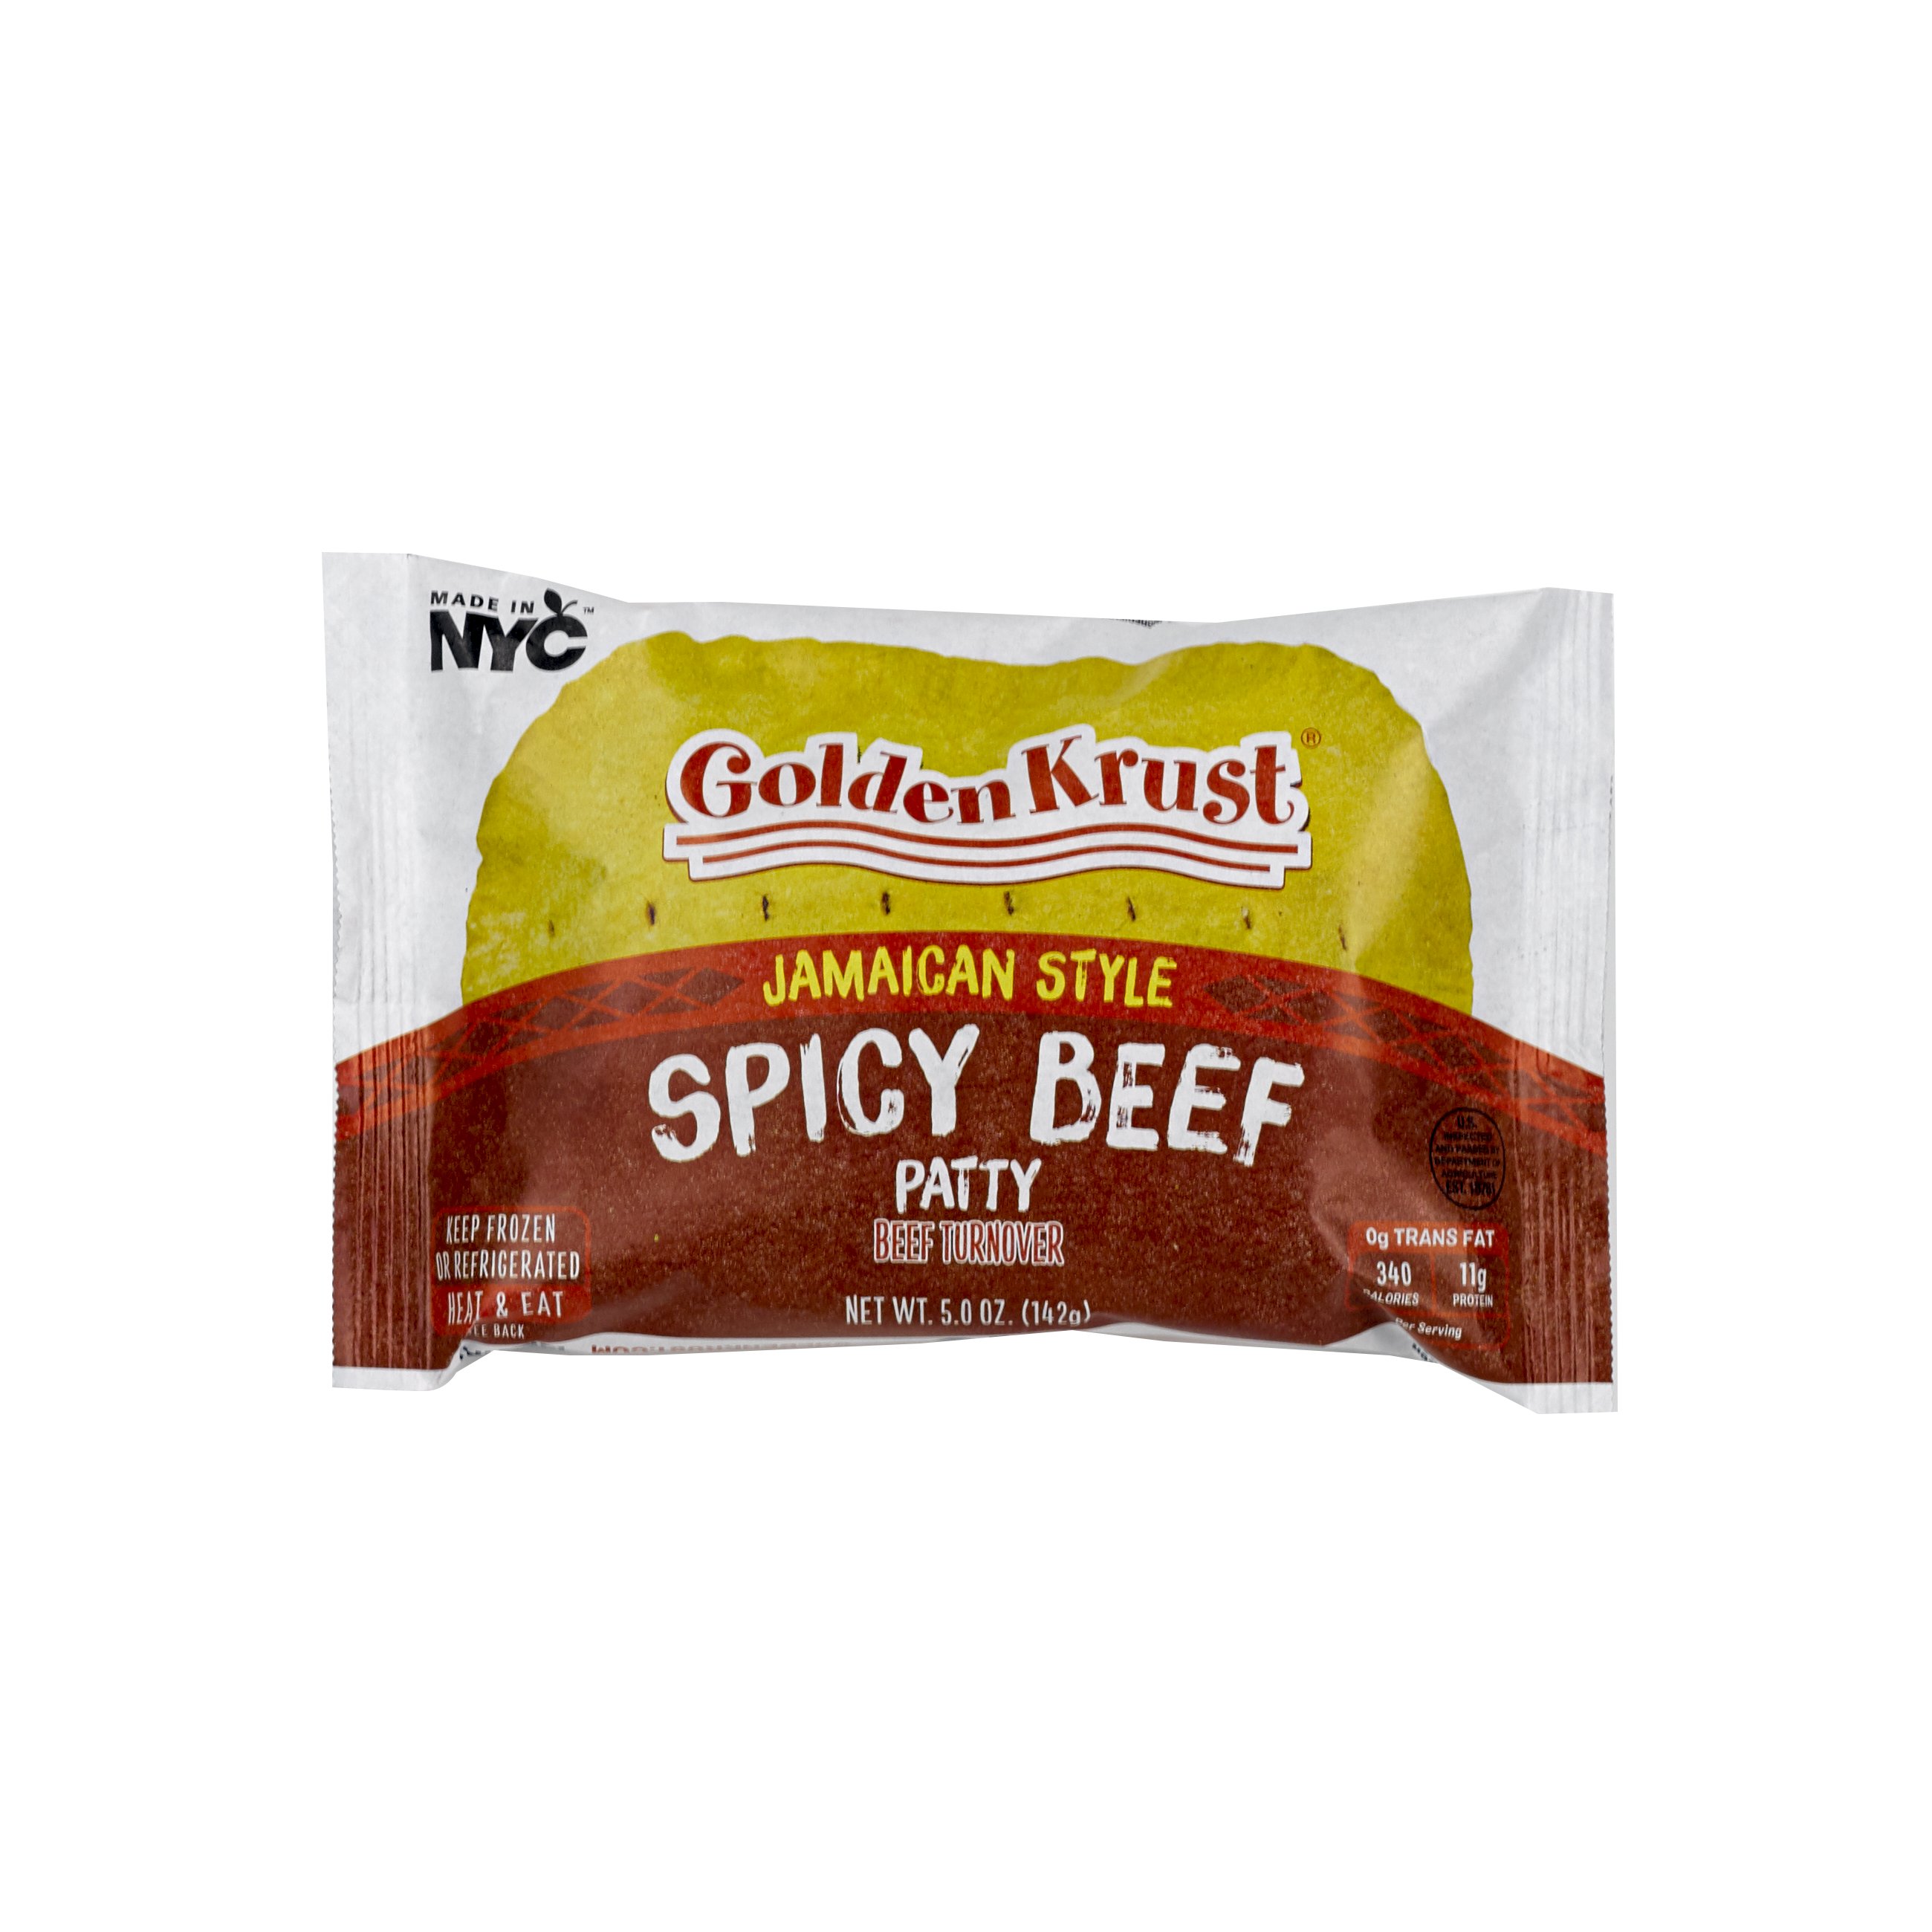 Spicy Jamaican Beef Patties